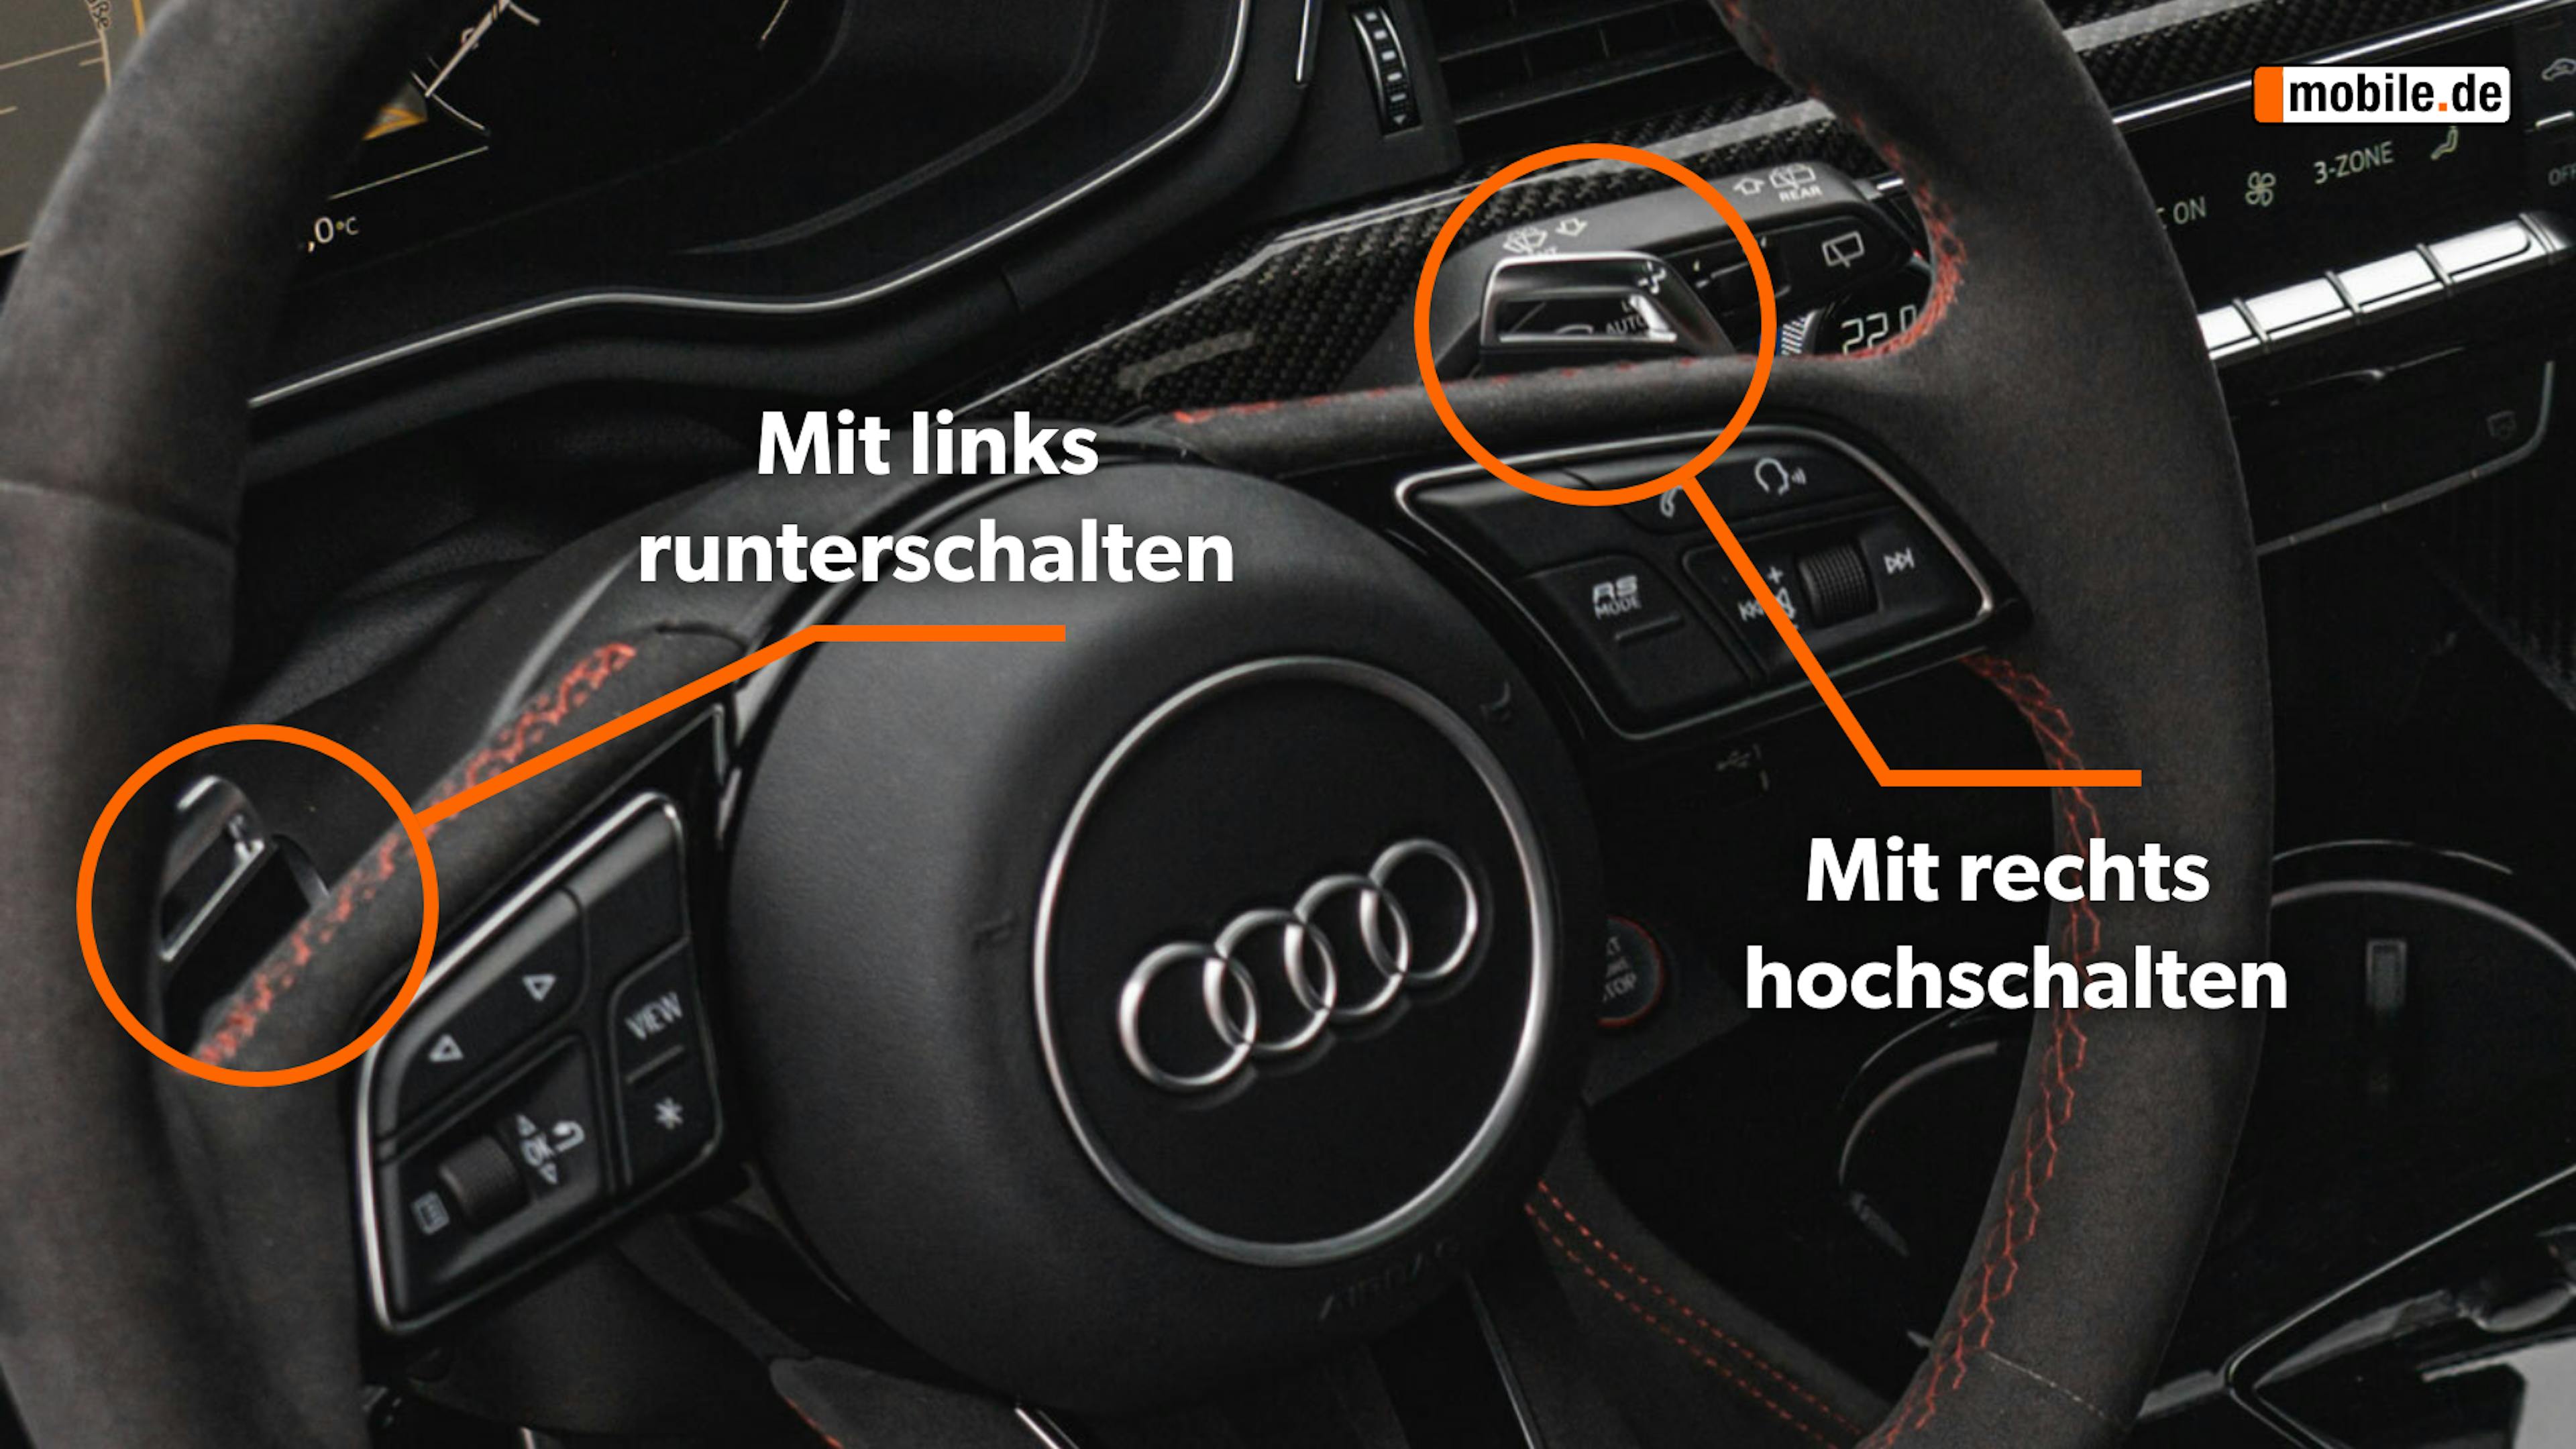 Blick in das Cockpit eines Audi mit Schaltwippen.